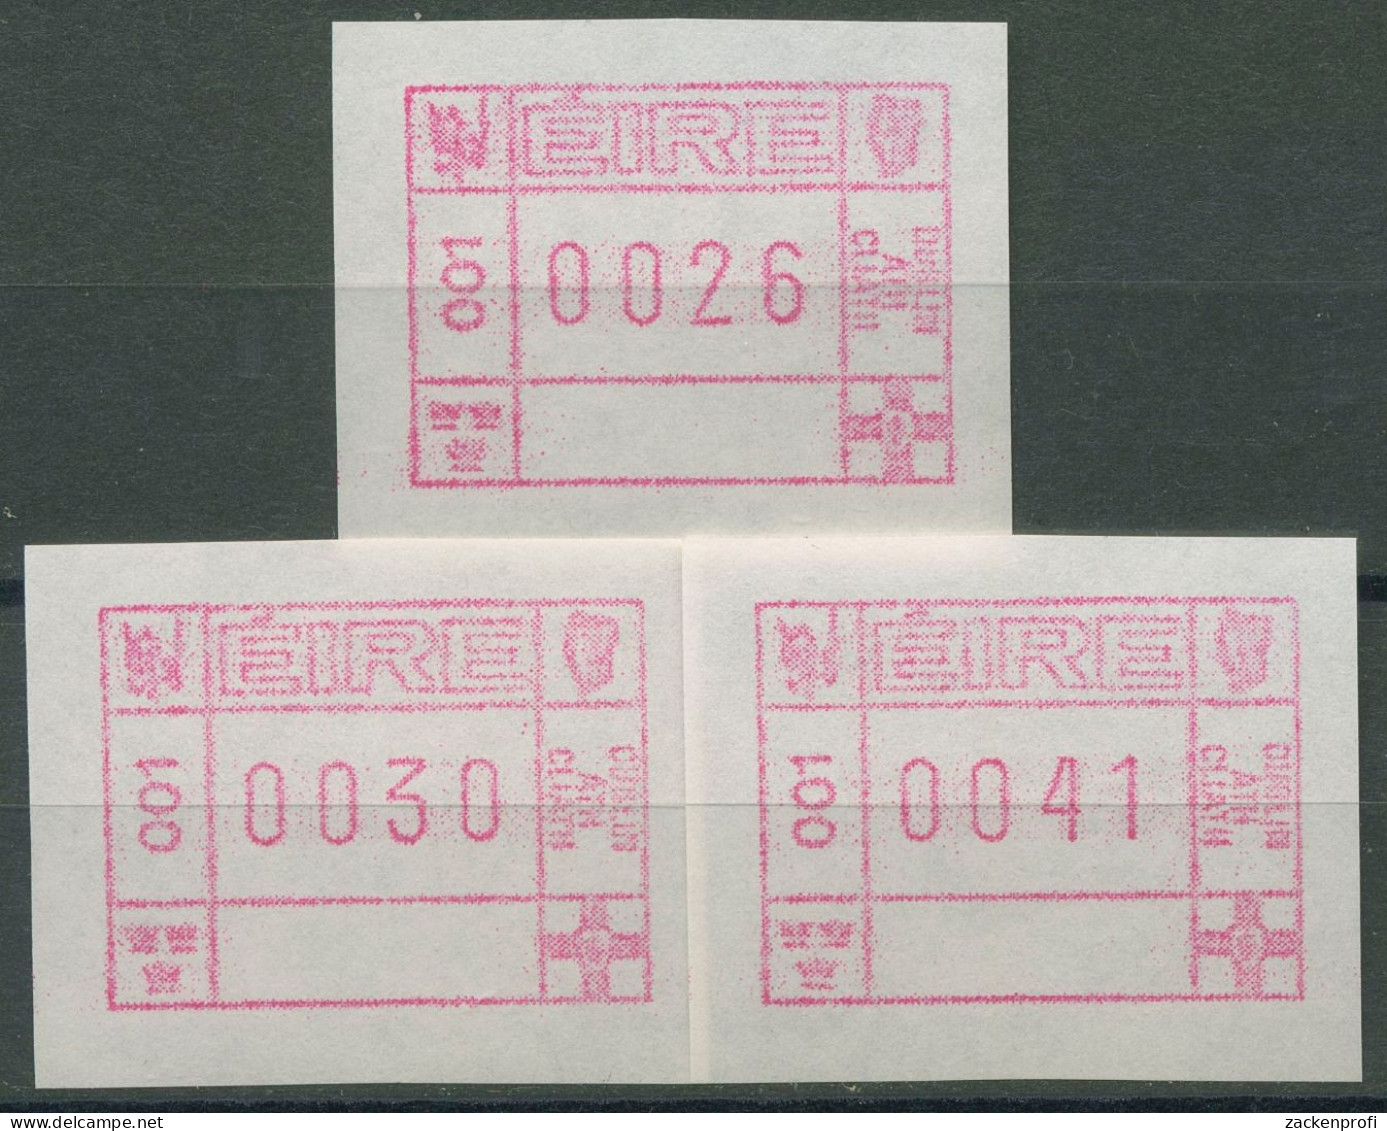 Irland Automatenmarken 1990 Freimarke Versandstellensatz ATM 1 S1 Postfrisch - Affrancature Meccaniche/Frama